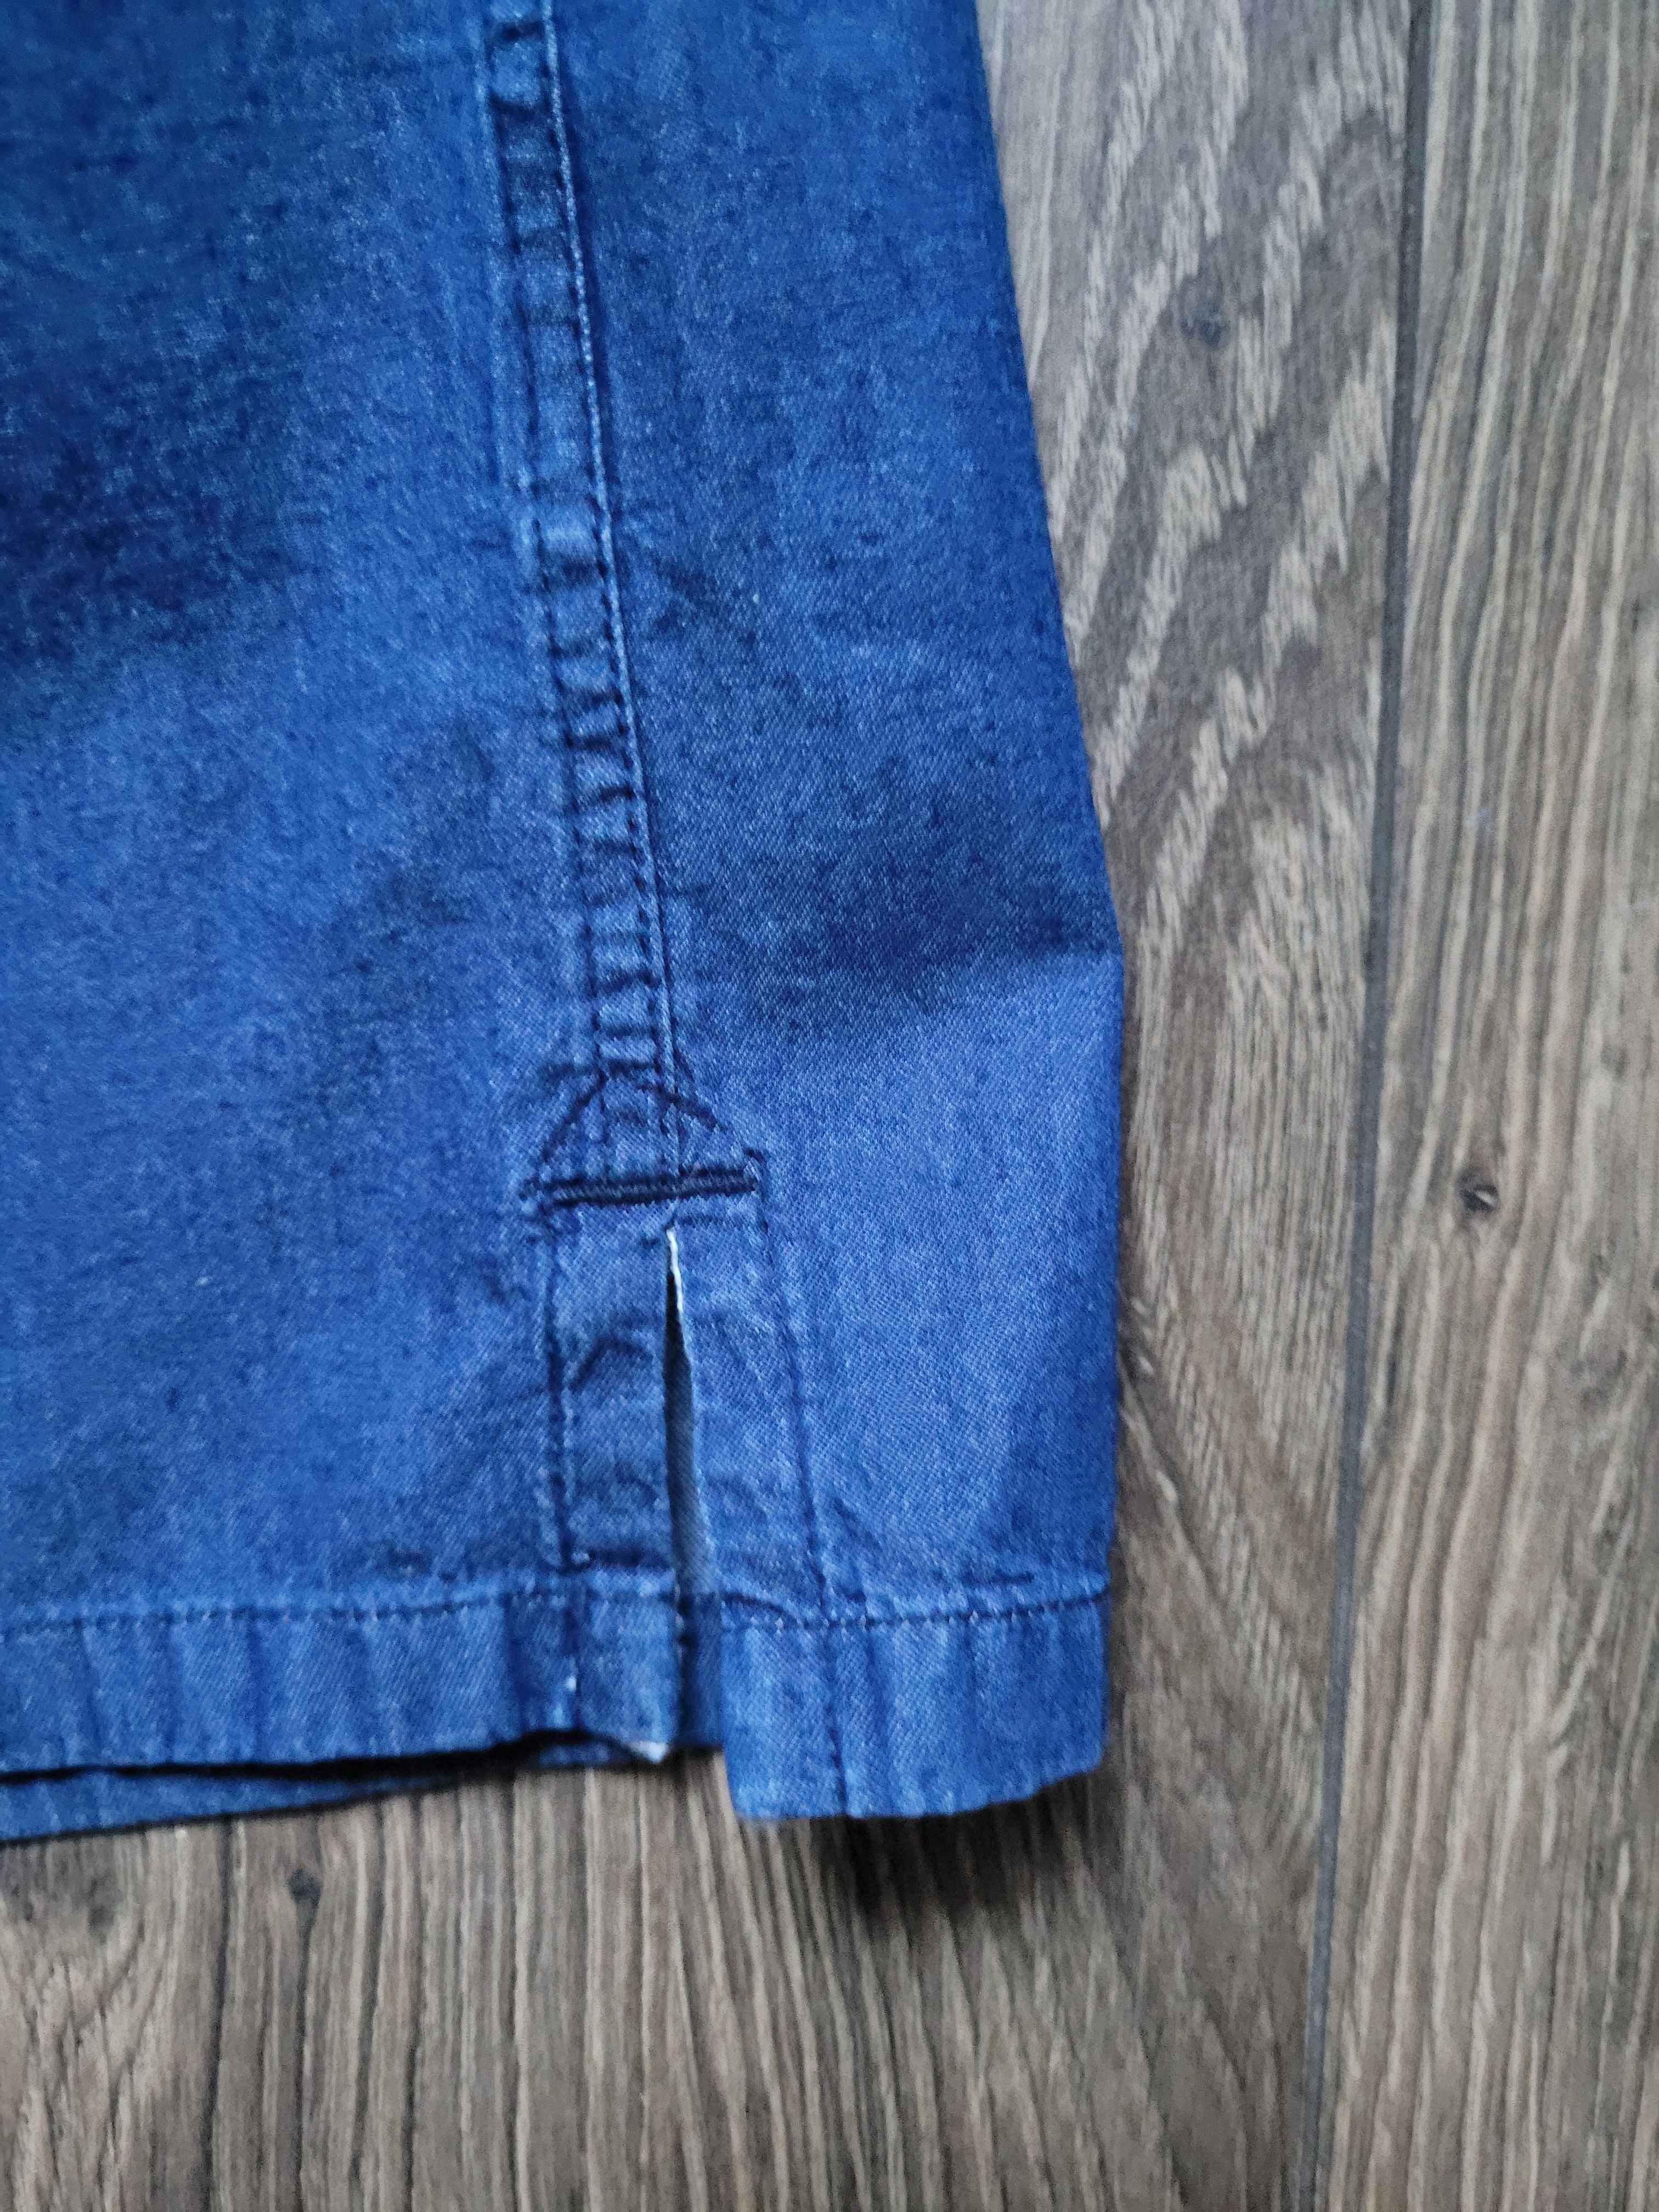 koszula Farah M casual regular fit krótki rękaw jeansowy 100% bawełna